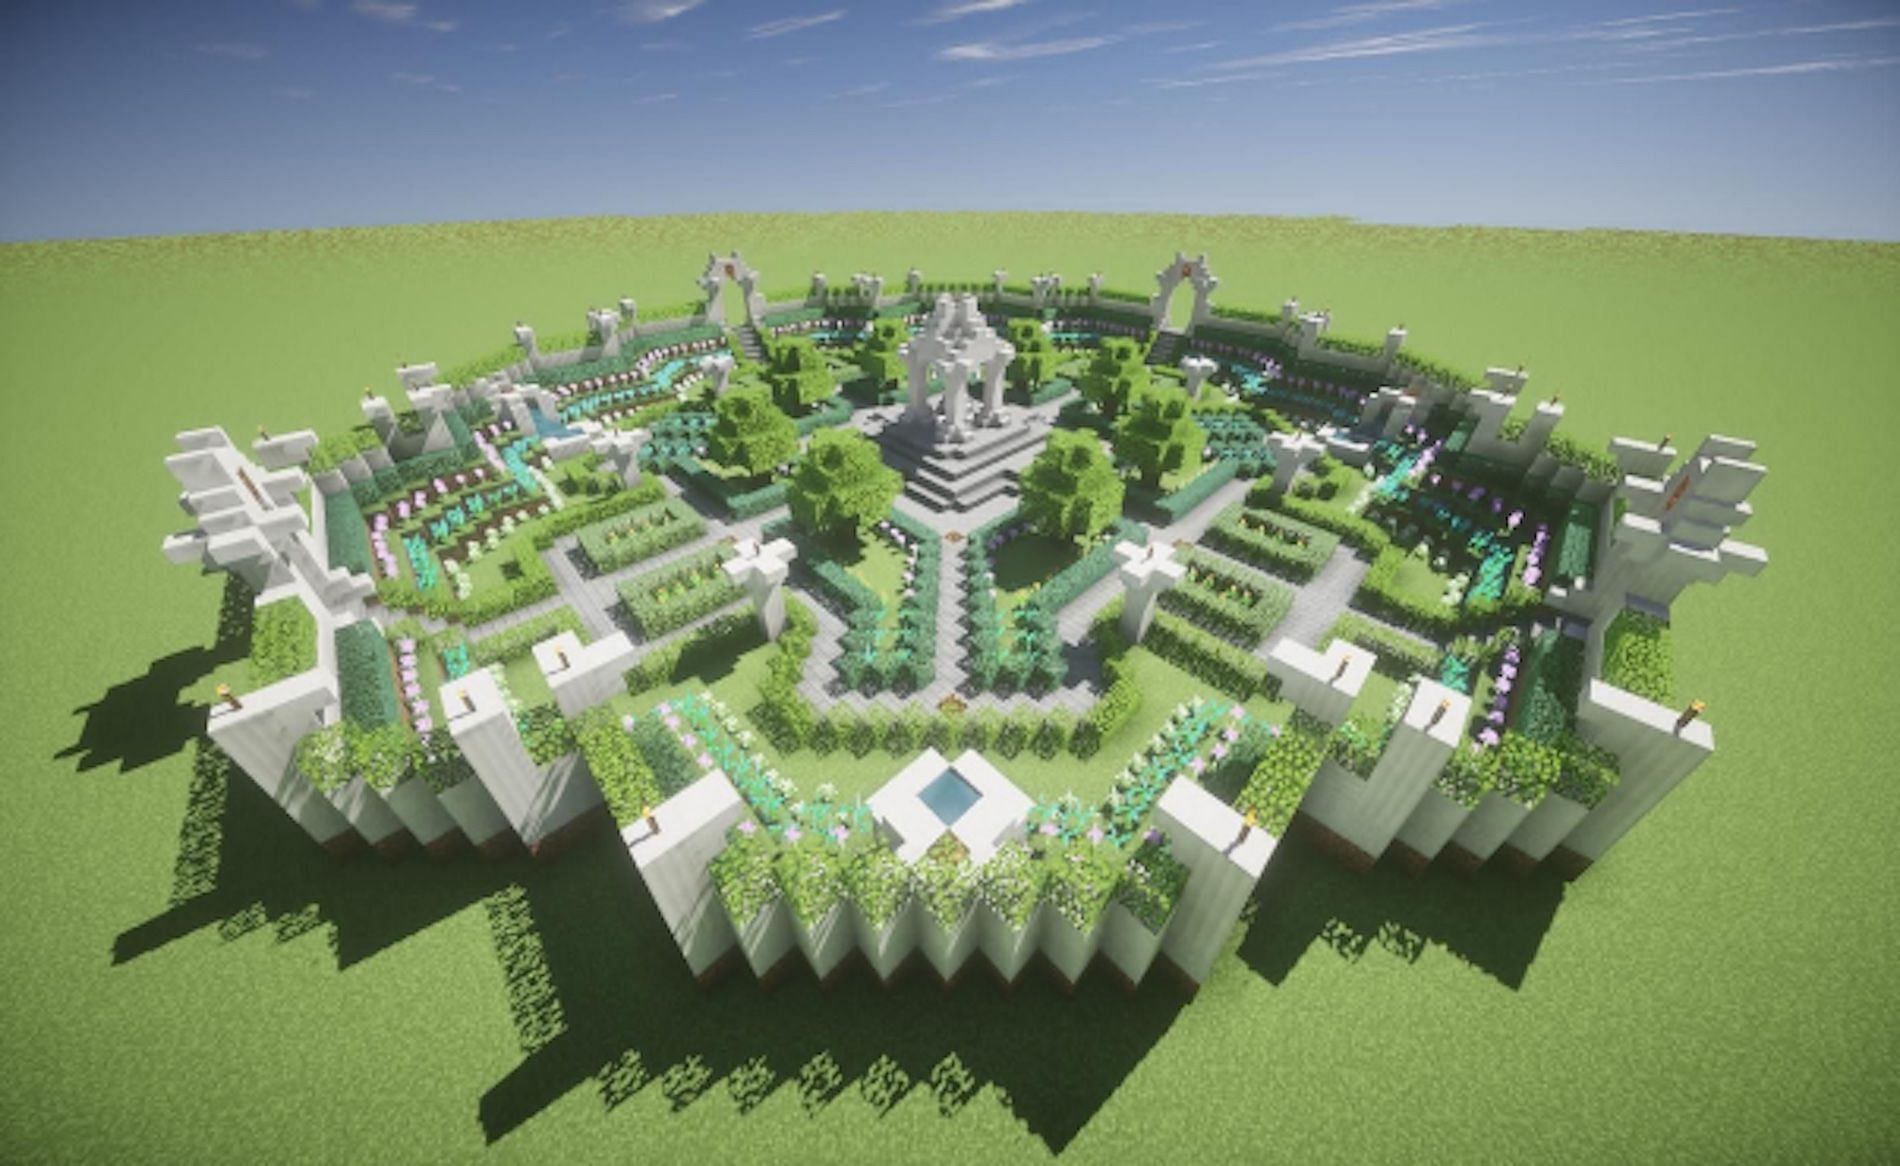 Hedge maze garden (Image via Minecraft)